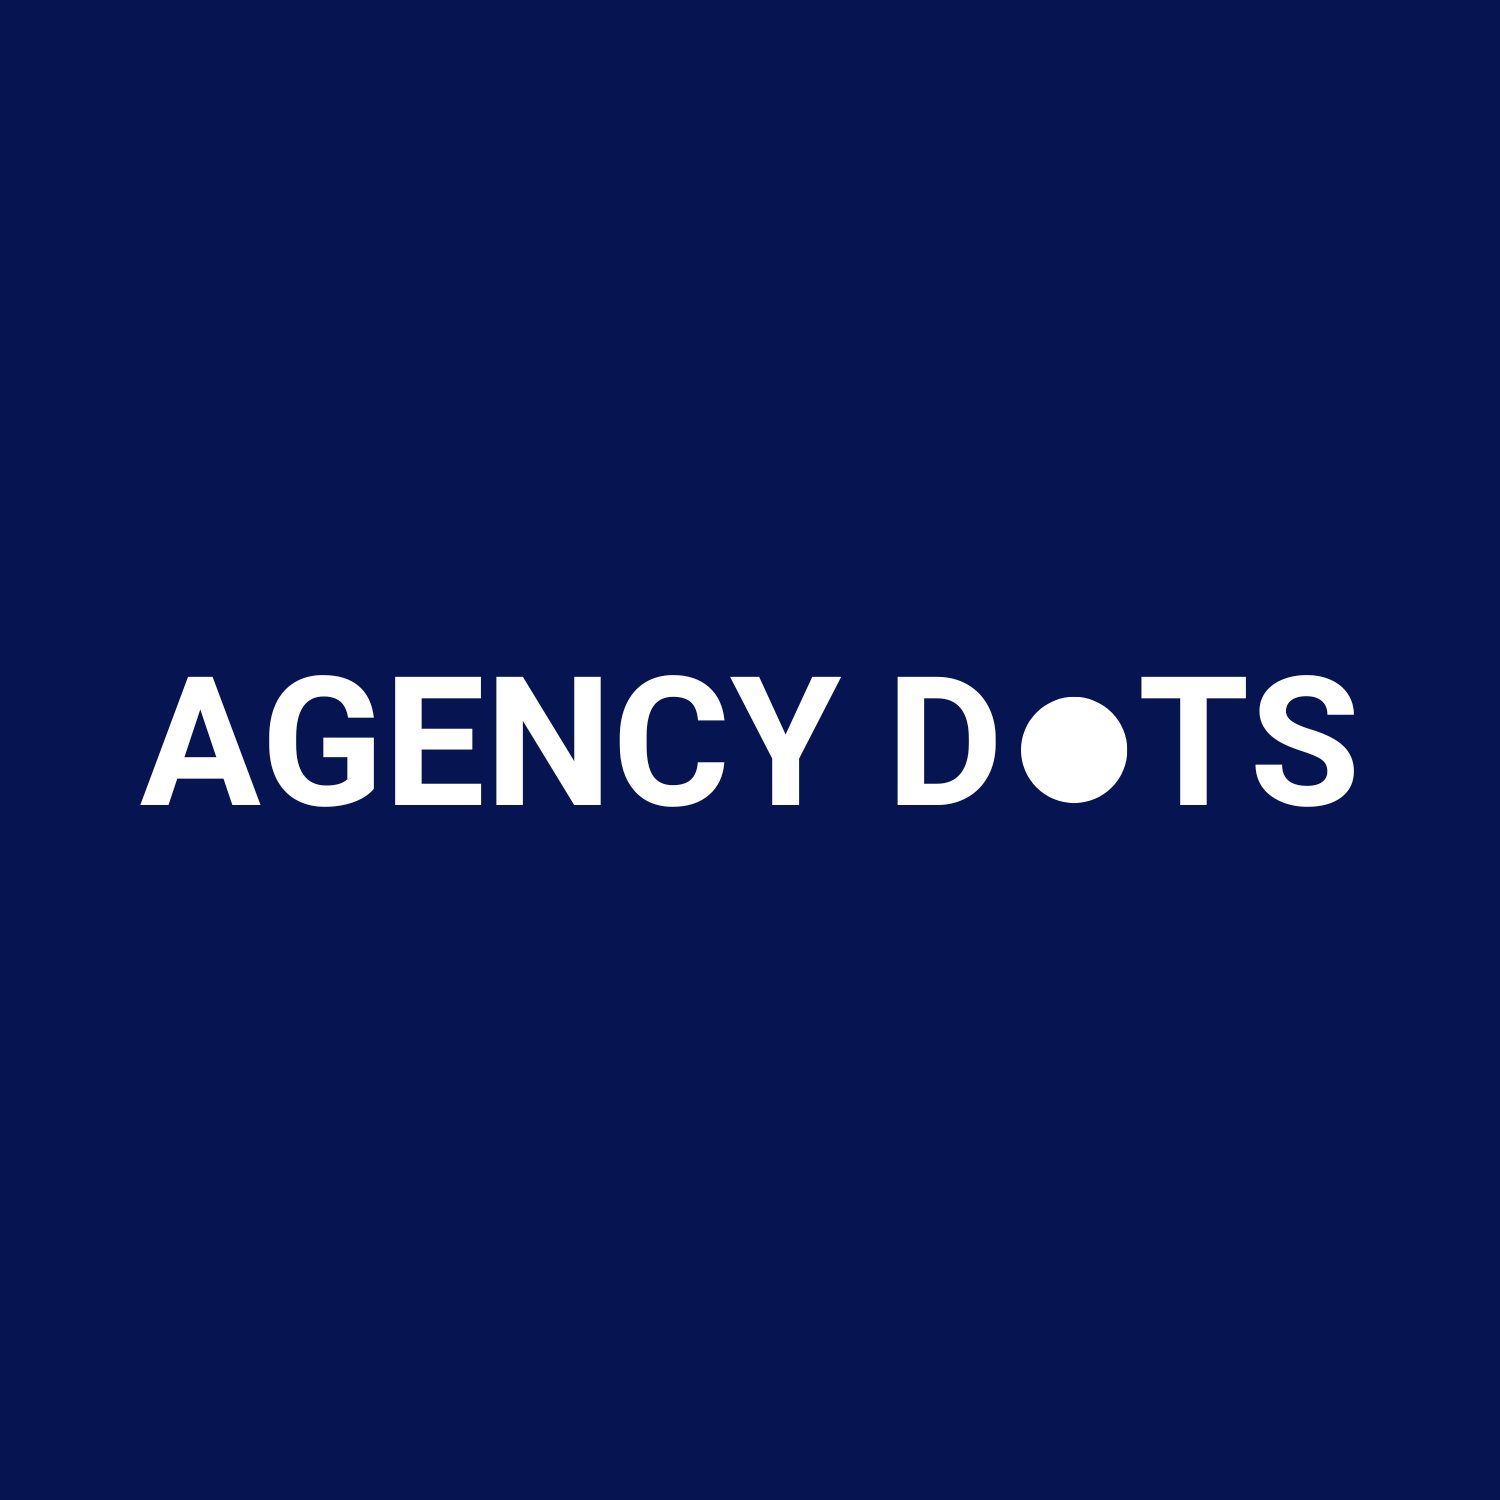 Agency Dots